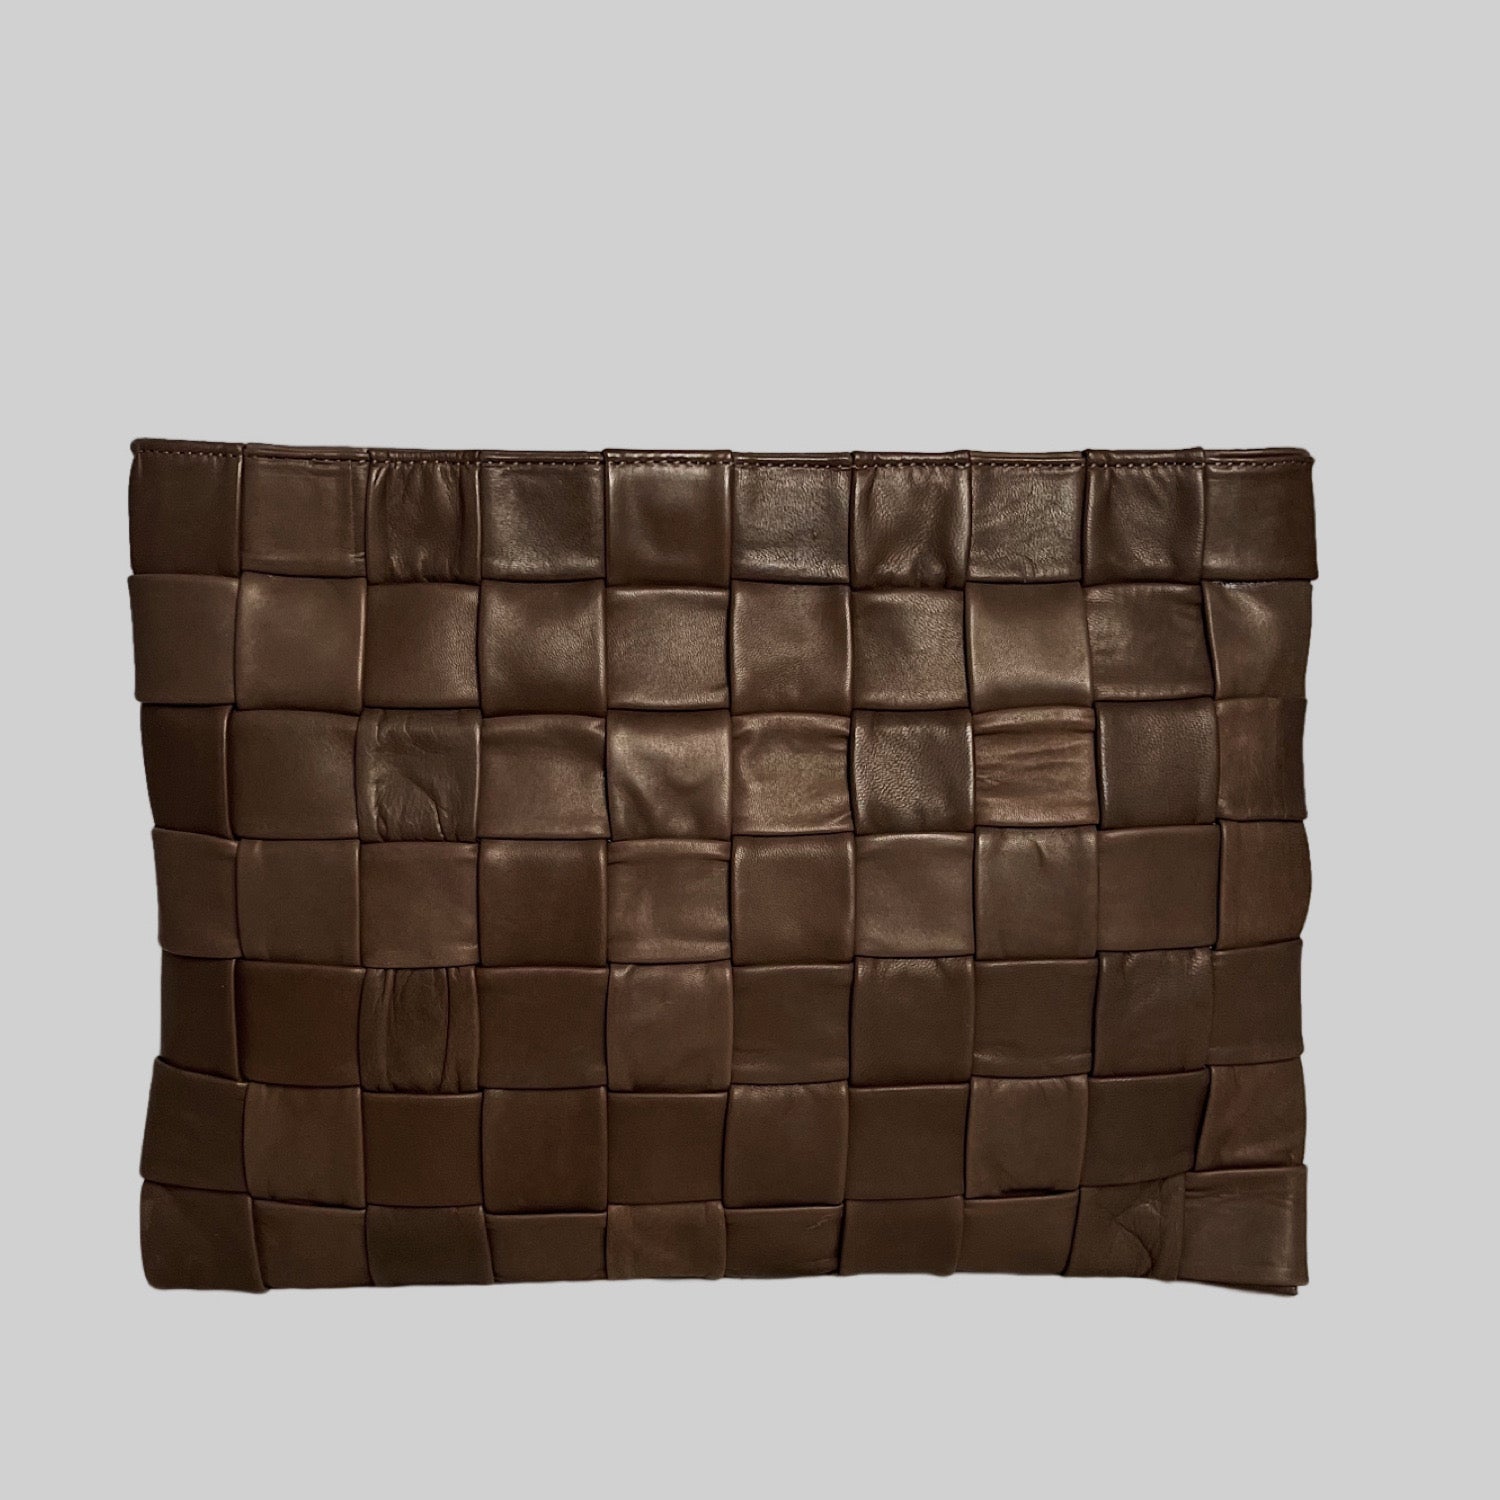 Ribichini Square Laptop-vesken i brun: Elegant design, romslig interiør. Beskyttelse og stil på farten.